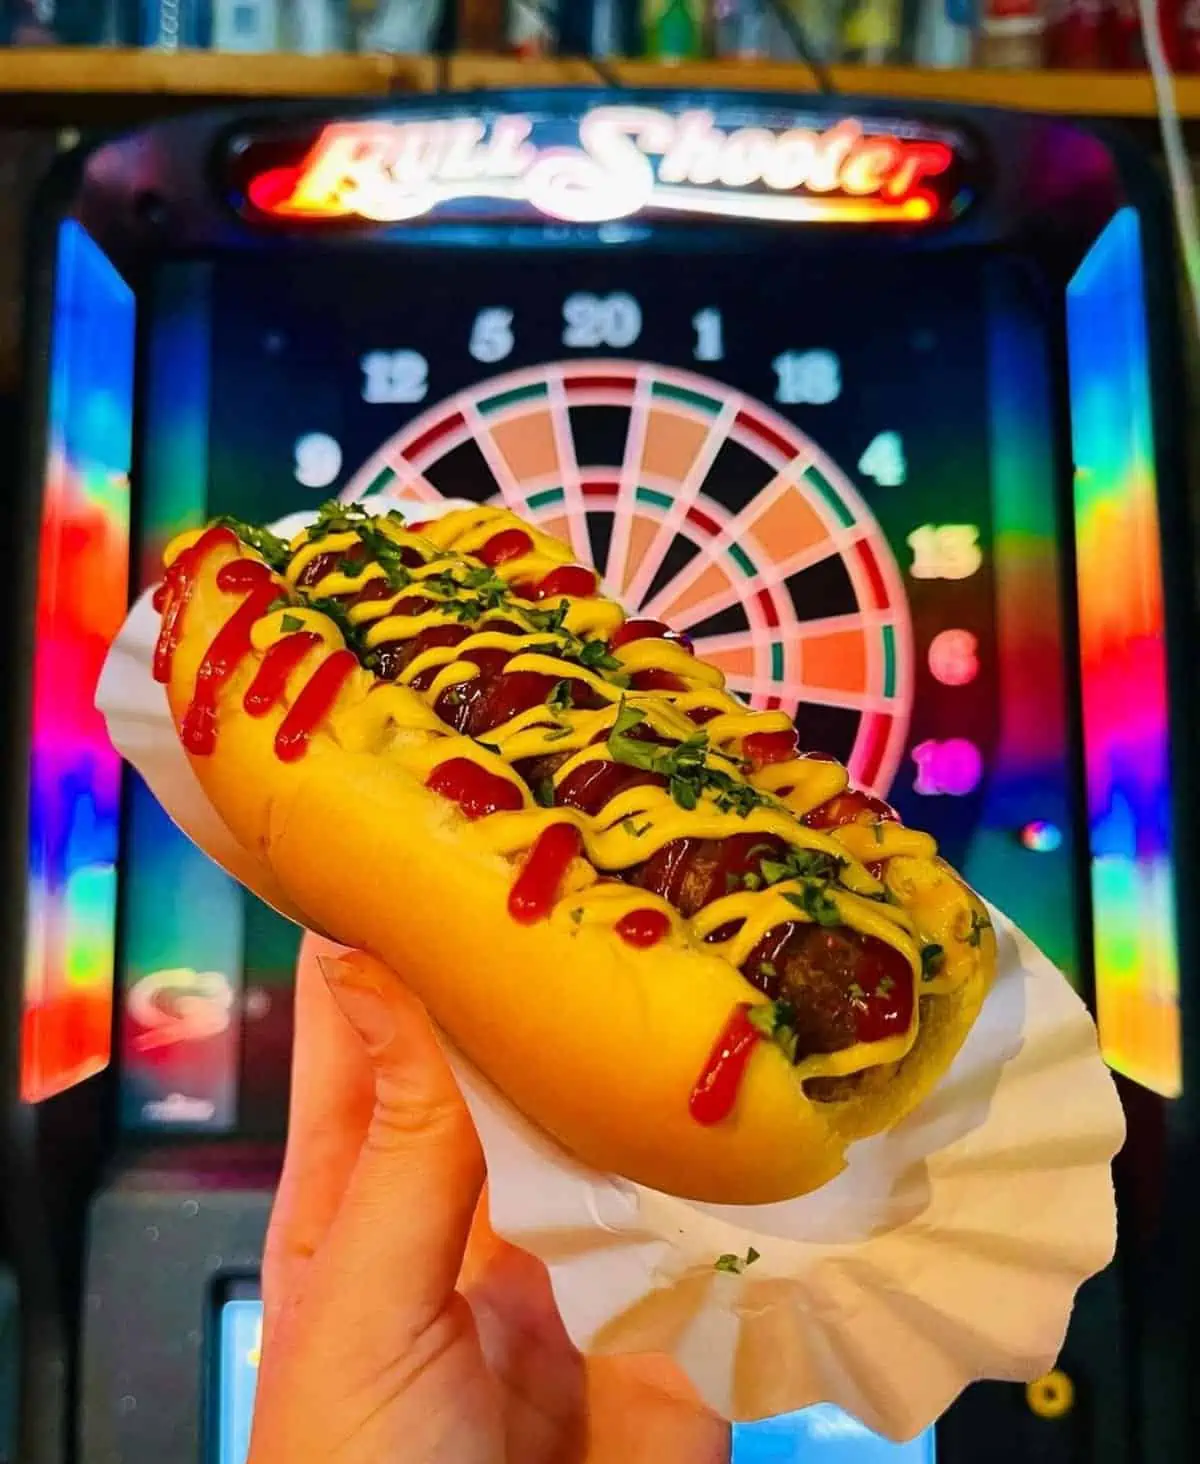 A vegan hot dog from The Vegan Hot Dog Cart.